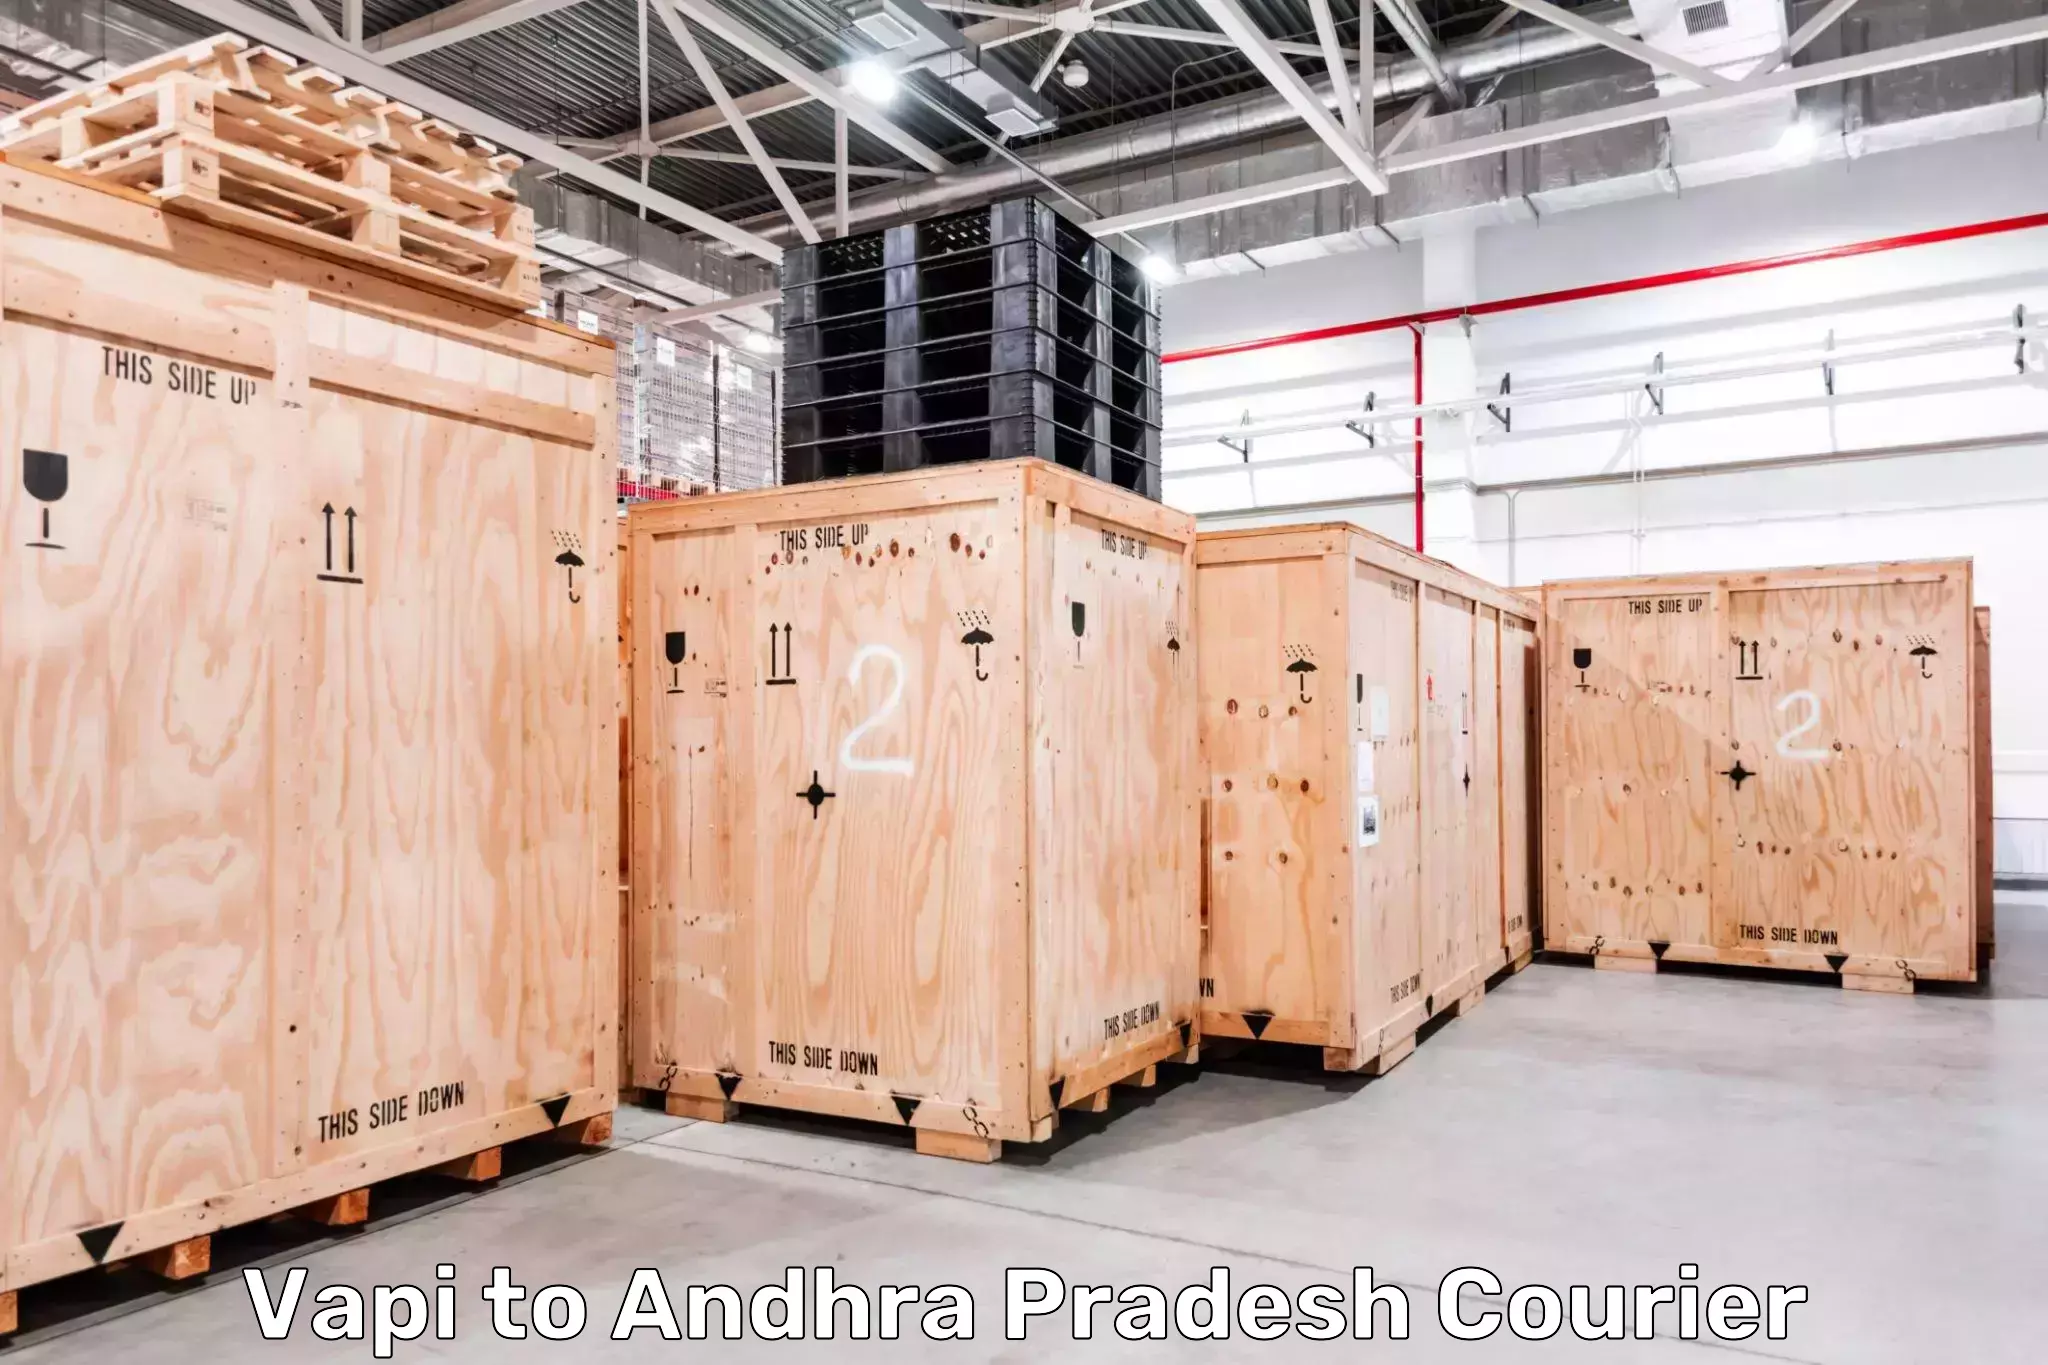 Global parcel delivery Vapi to Gudivada